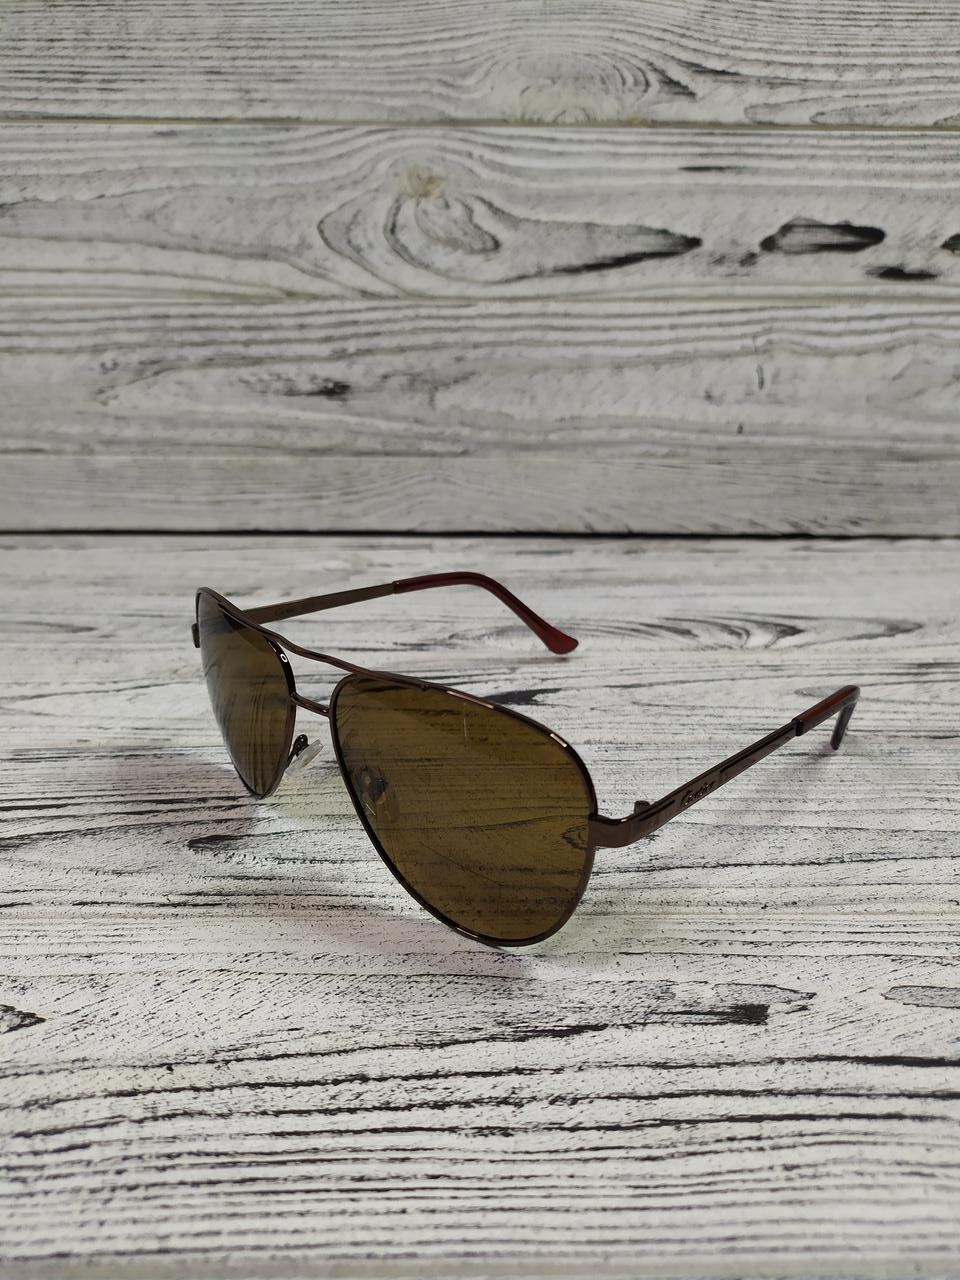 Сонцезахисні окуляри авіатори коричневі чоловічі в металевій оправі